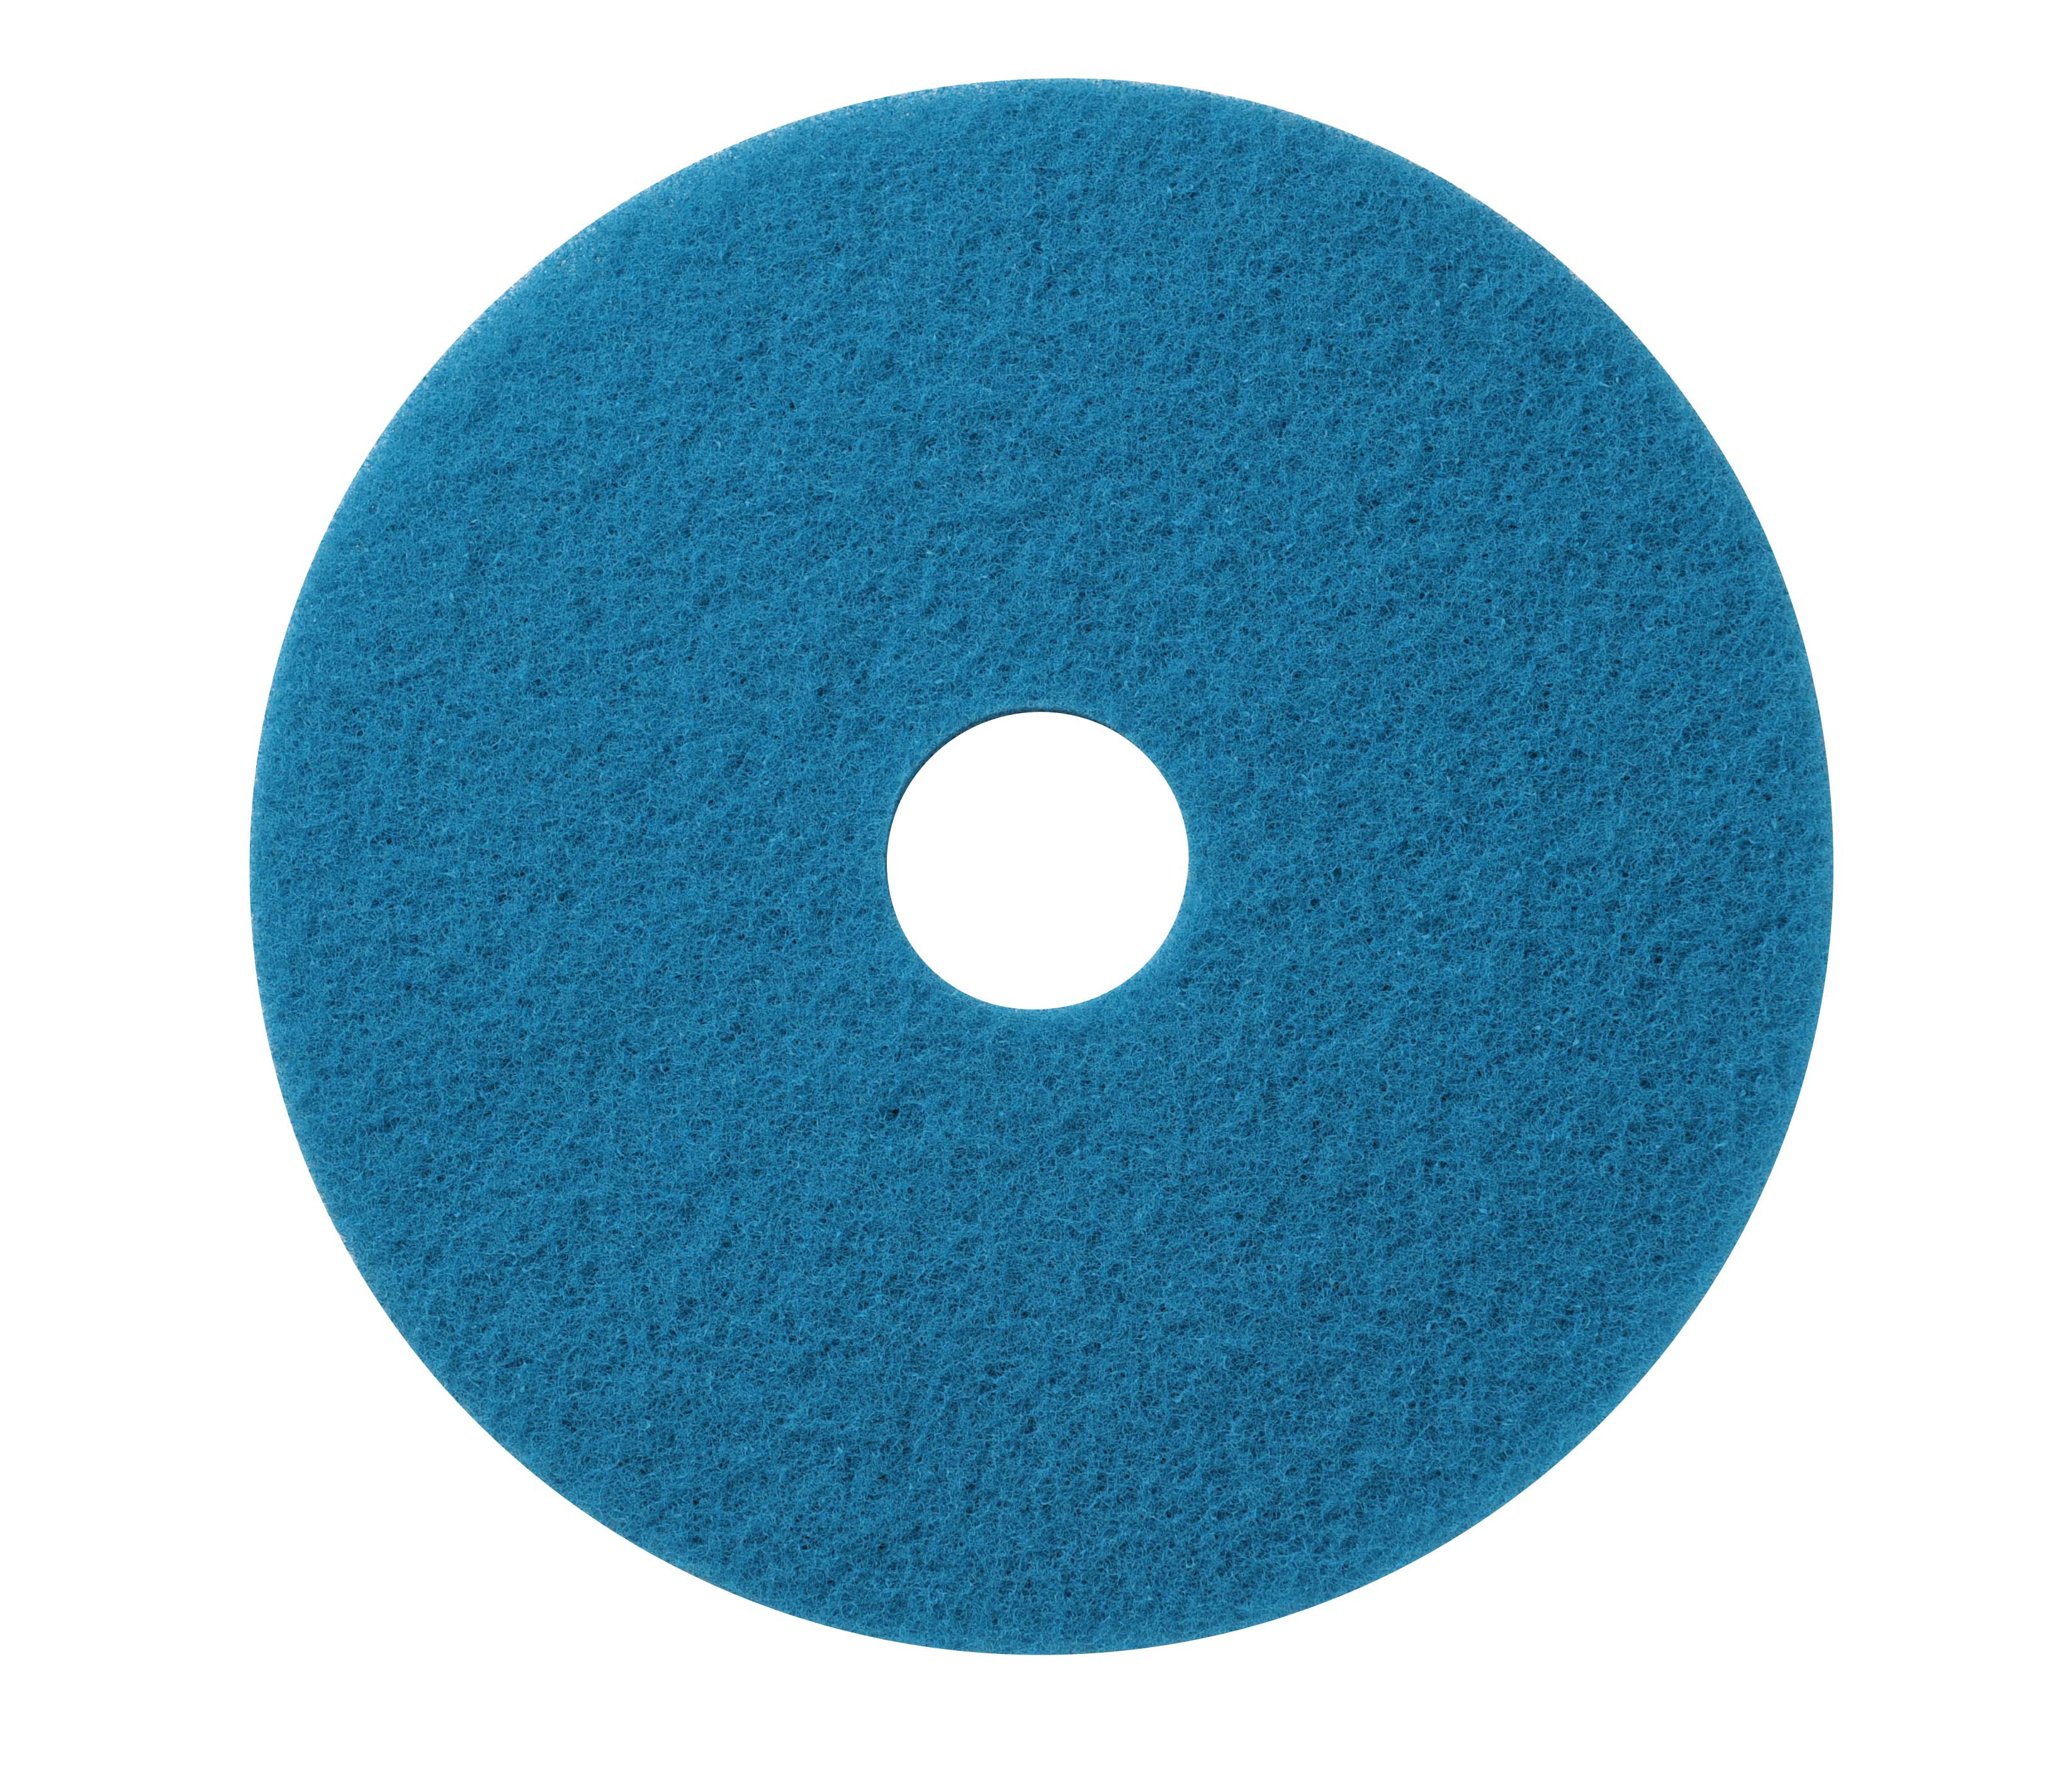 e1cf321d91edc0bdd7b8e23bf91aaca9_17-blue-cleaning-pads-x5